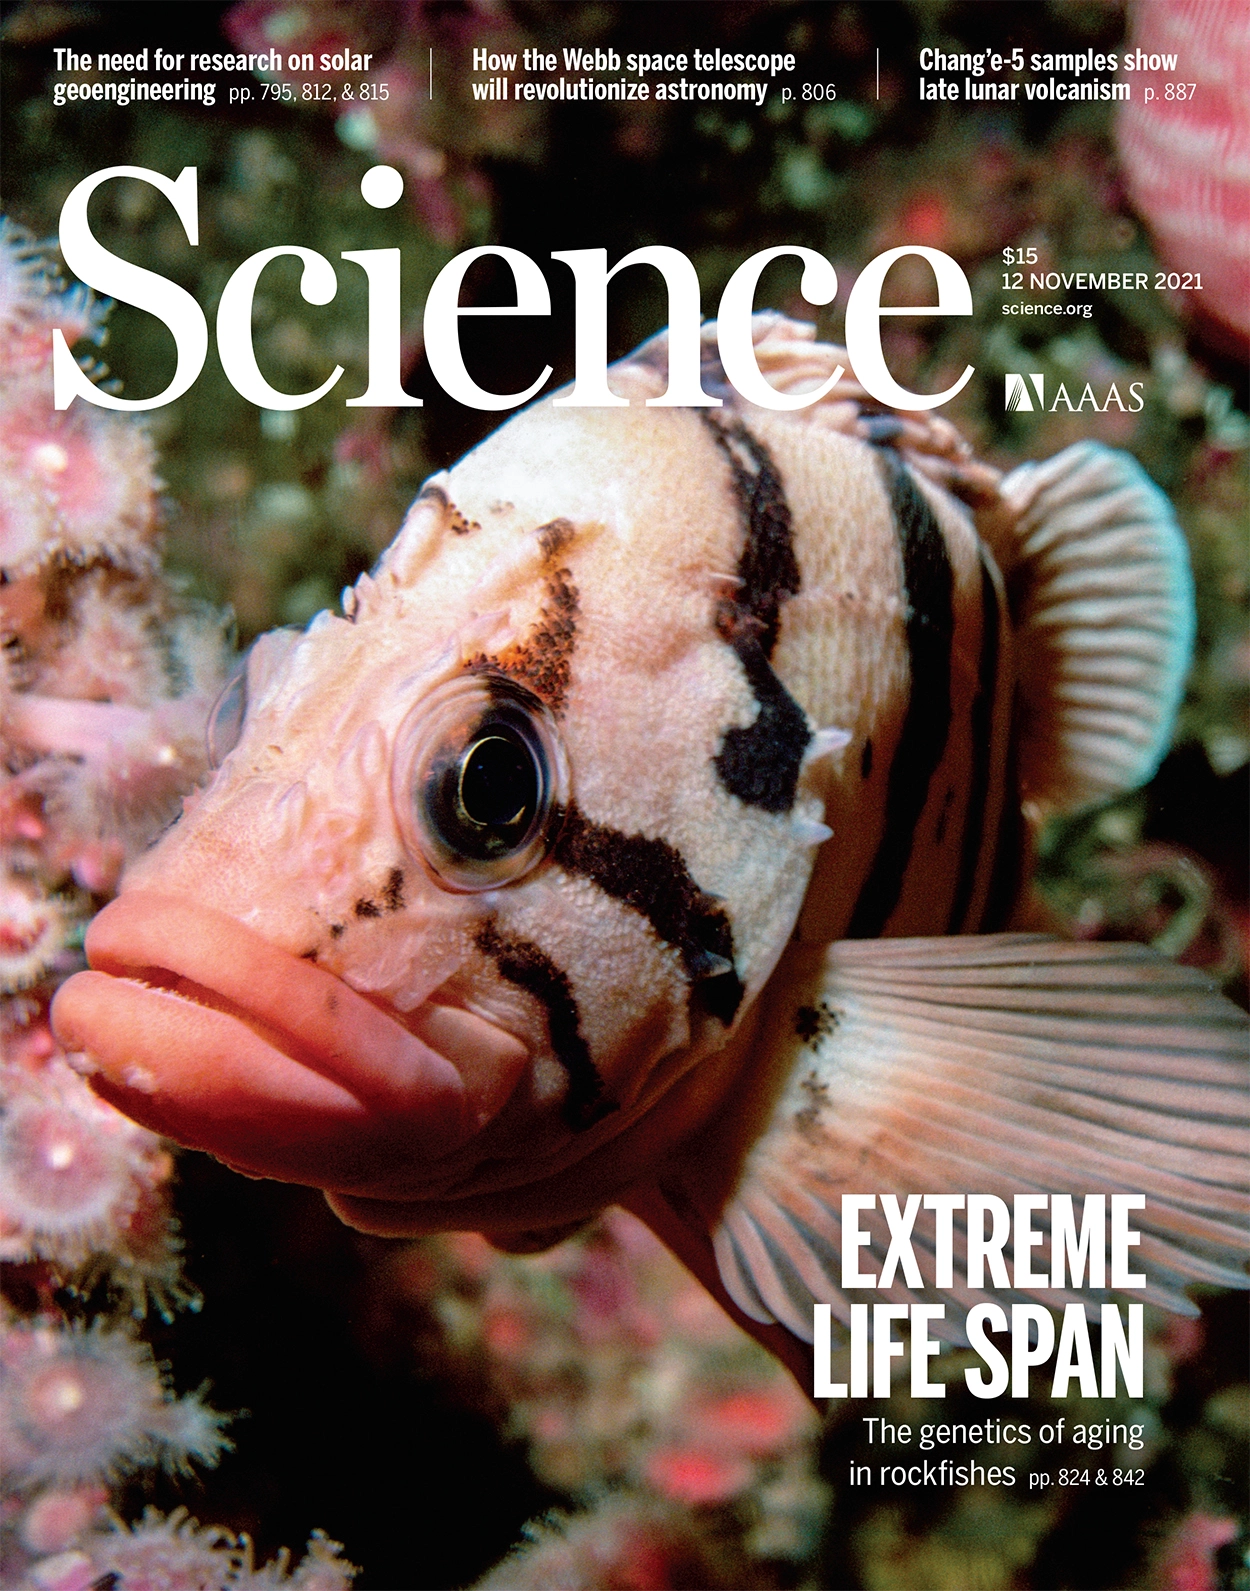 太平洋岩鱼极端寿命的起源与演化